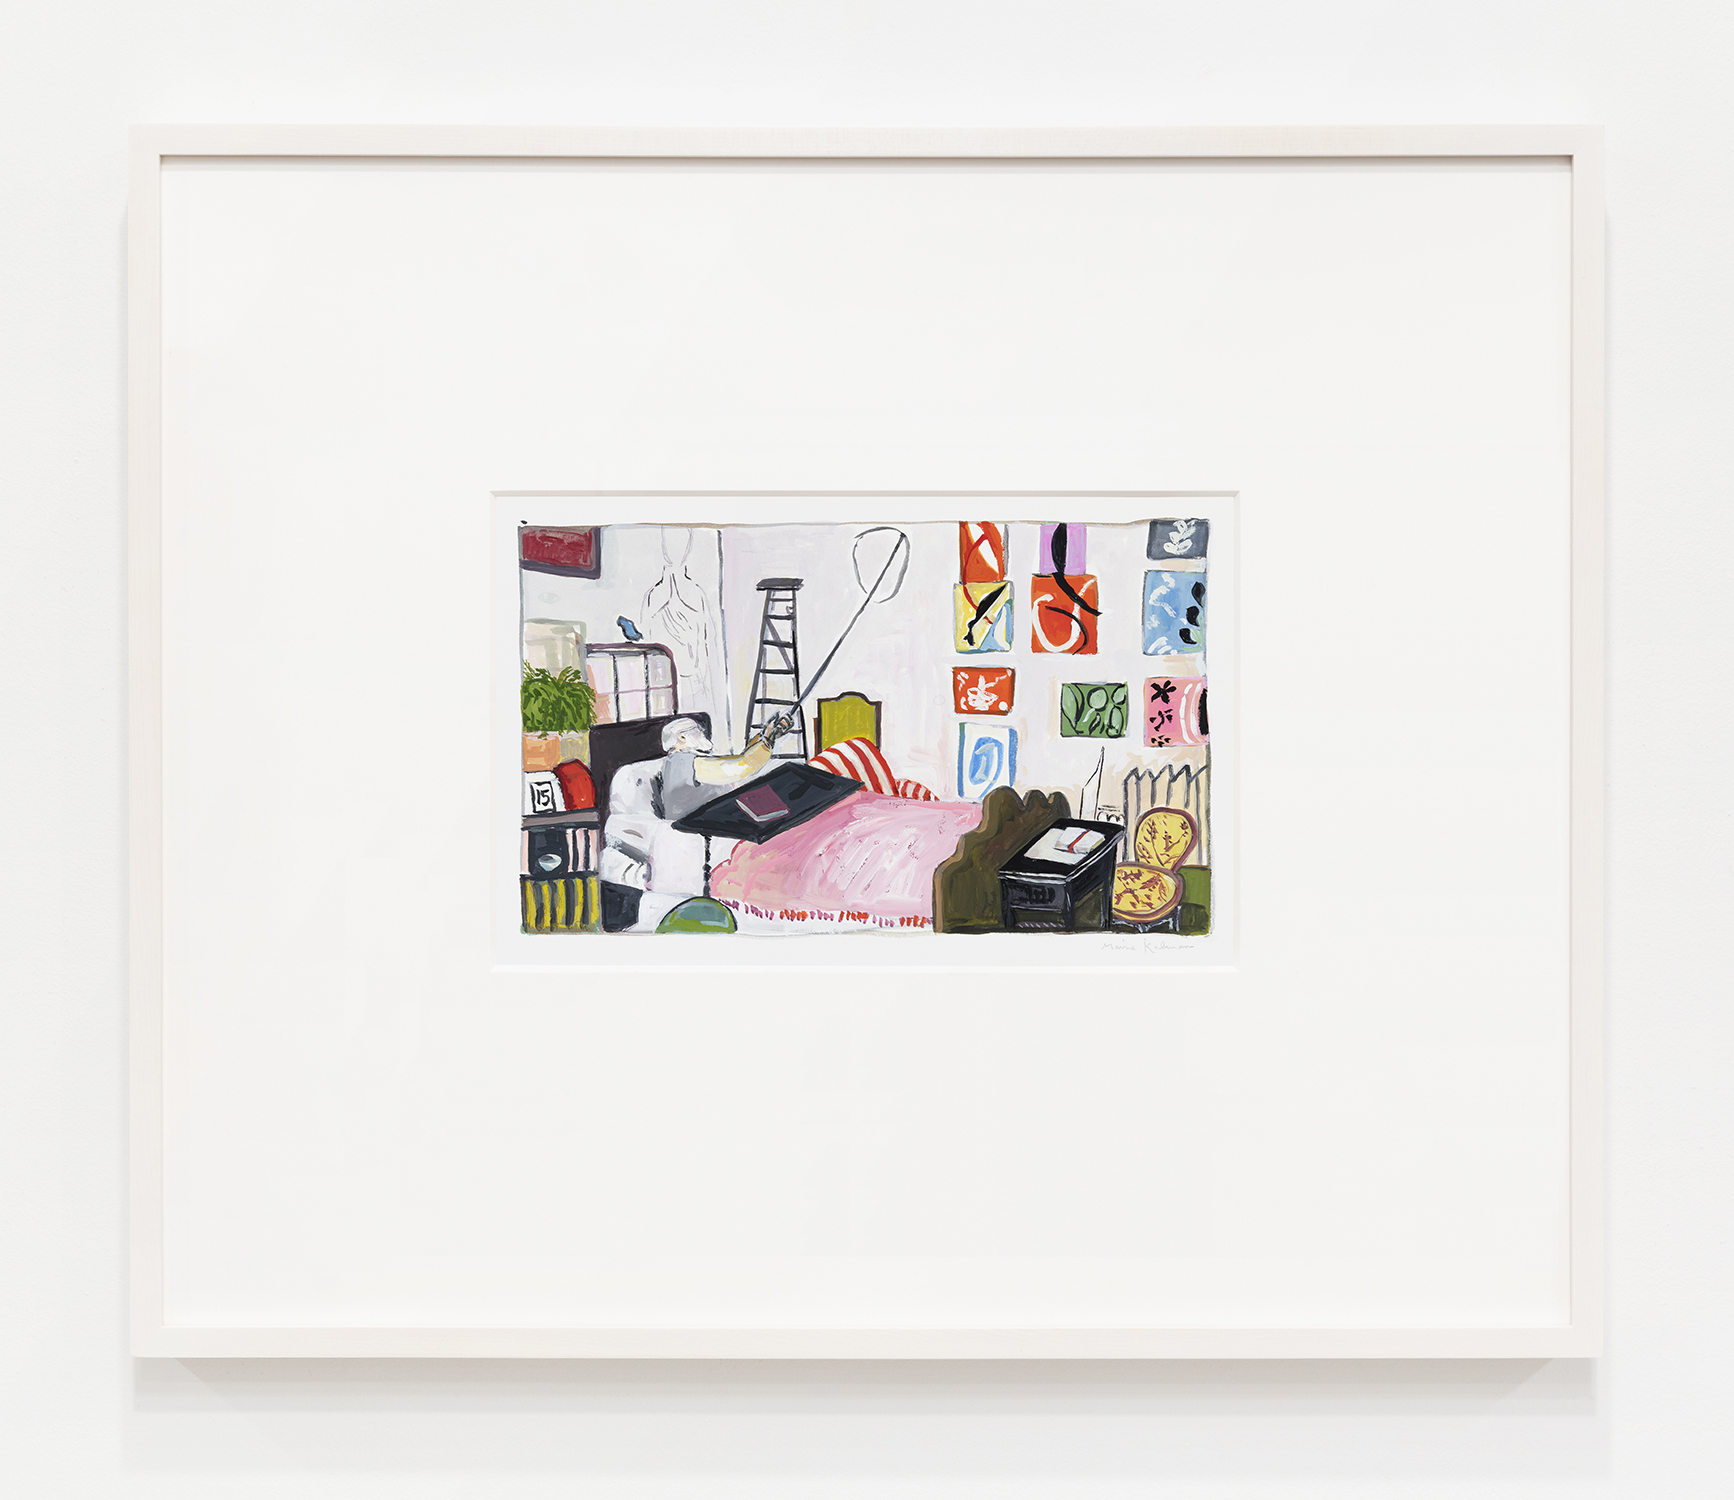 Maira Kalman Matisse Painting in Bed, 2020